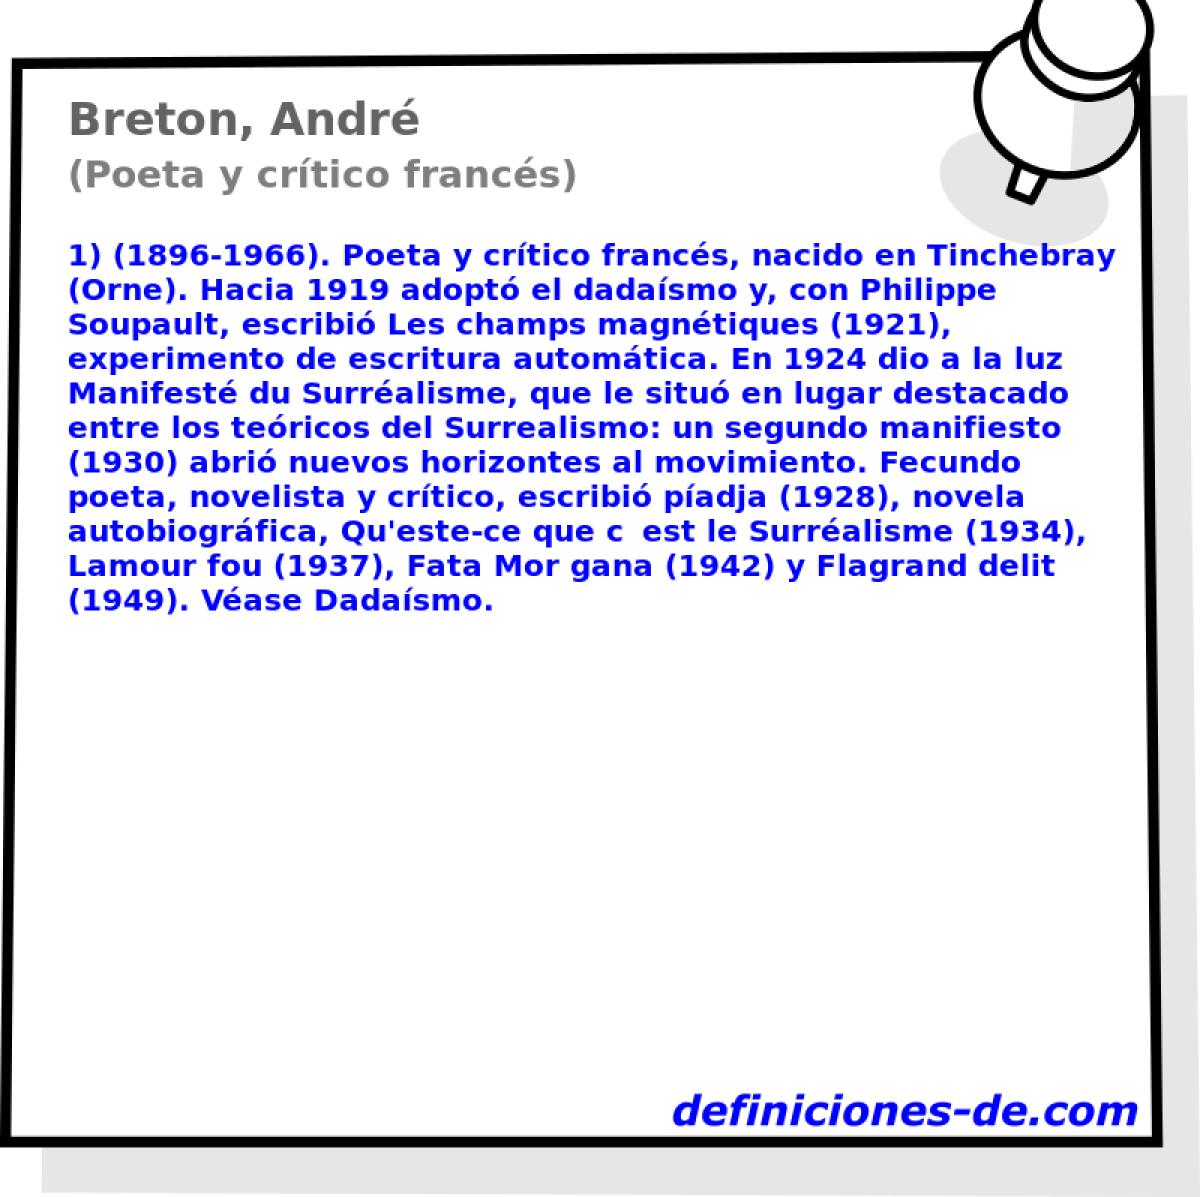 Breton, Andr (Poeta y crtico francs)